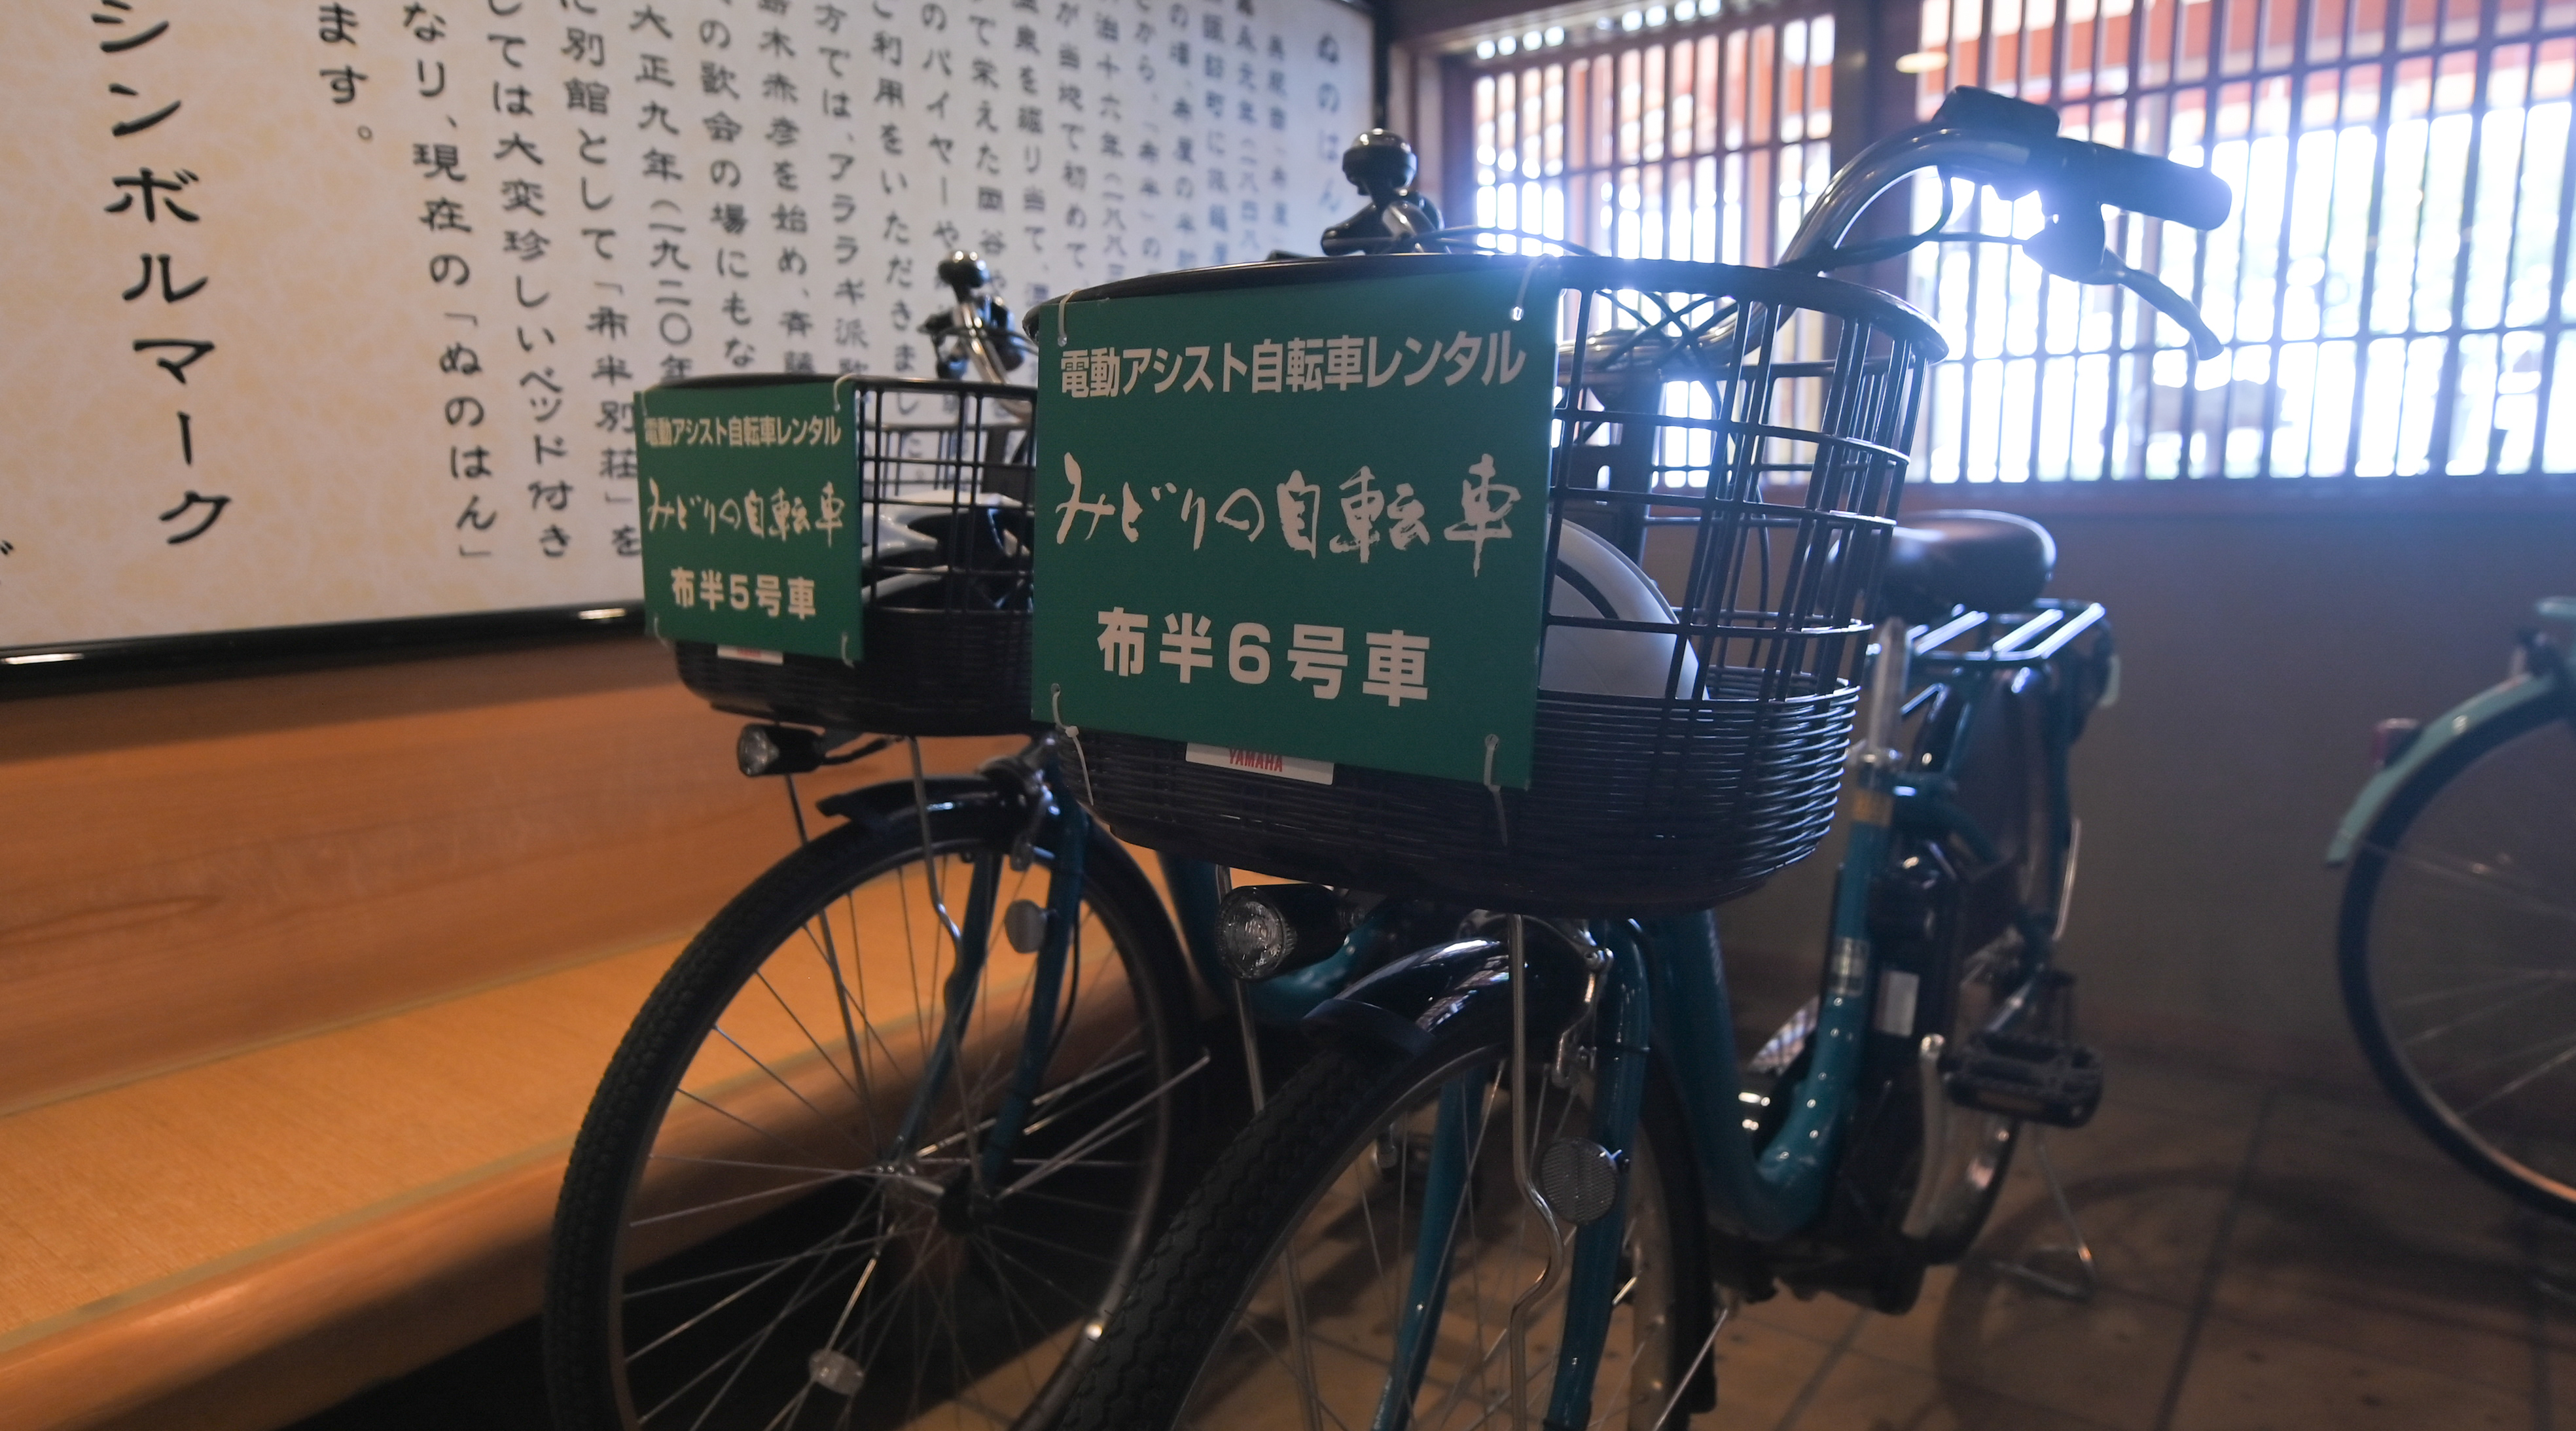 貸自転車を備えています。晴れた日には諏訪湖をサイクリングに。